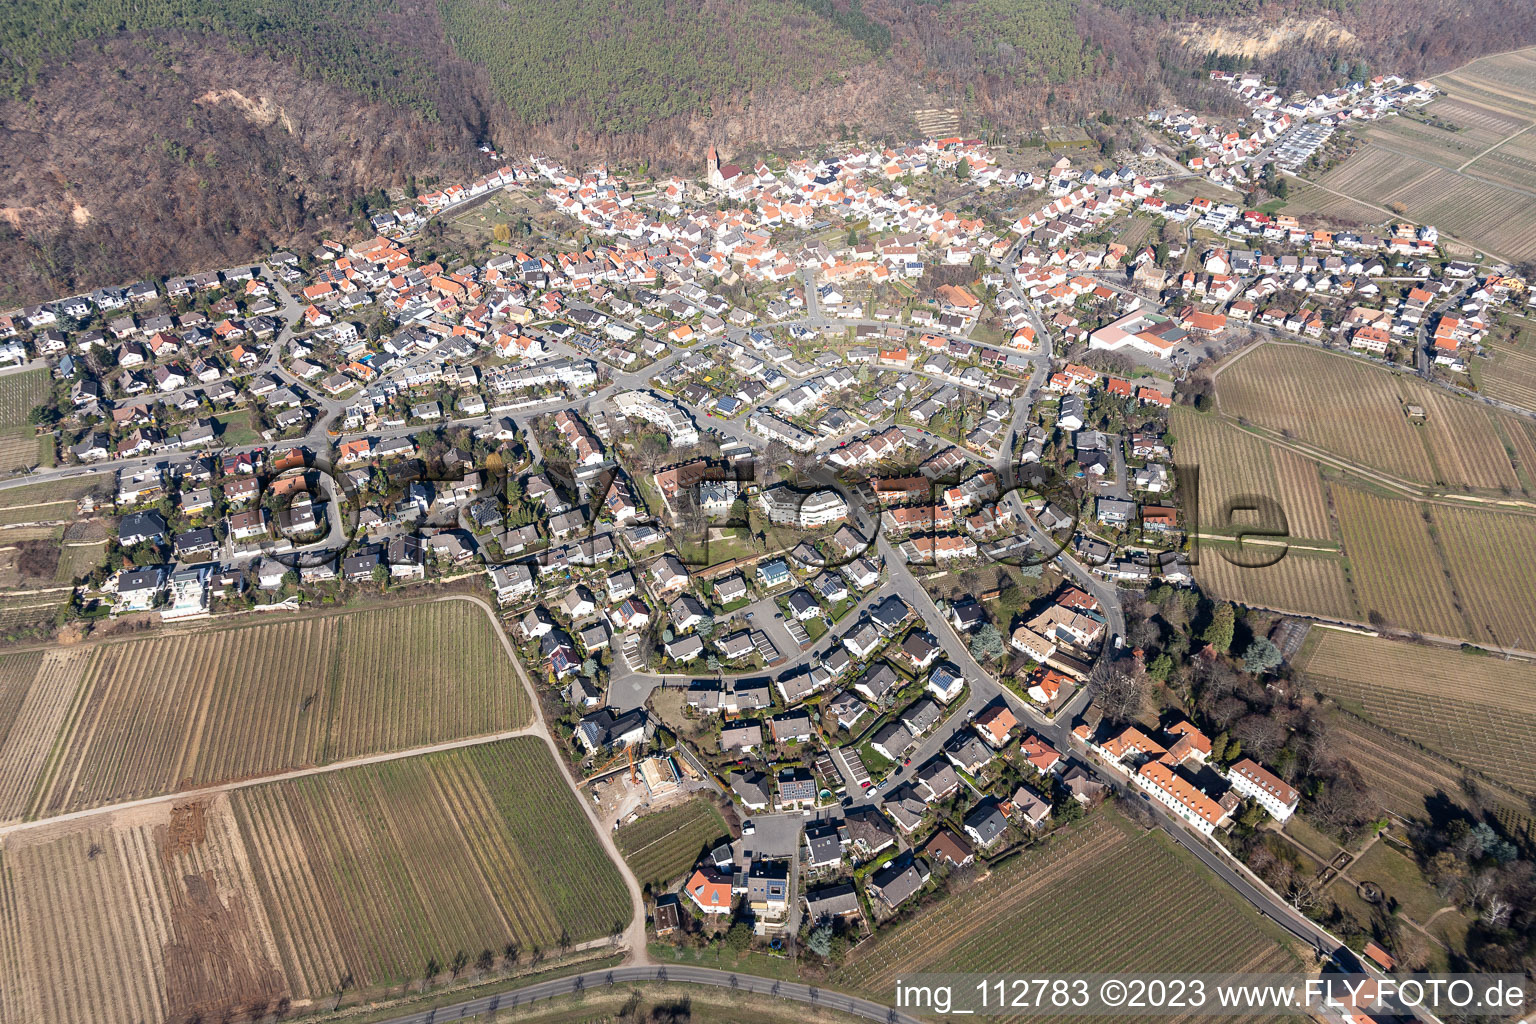 Luftbild von Ortsteil Königsbach in Neustadt an der Weinstraße im Bundesland Rheinland-Pfalz, Deutschland